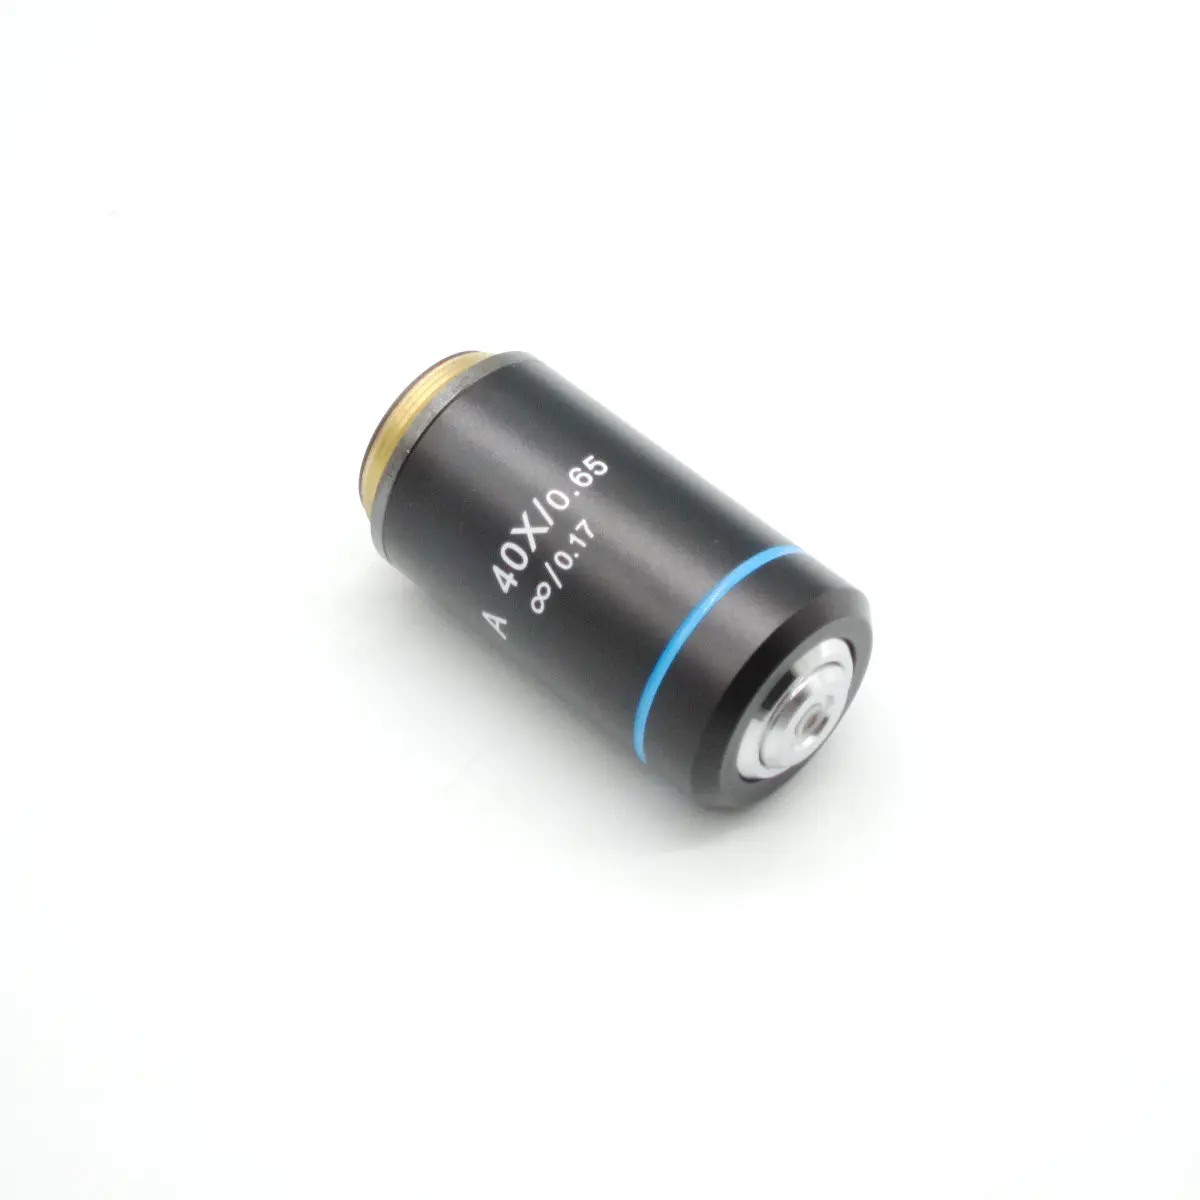 ओलिंप के लिए उपयुक्त CX जैविक माइक्रोस्कोप 40X/0.65mm अनंत अवर्णी उद्देश्य लेंस